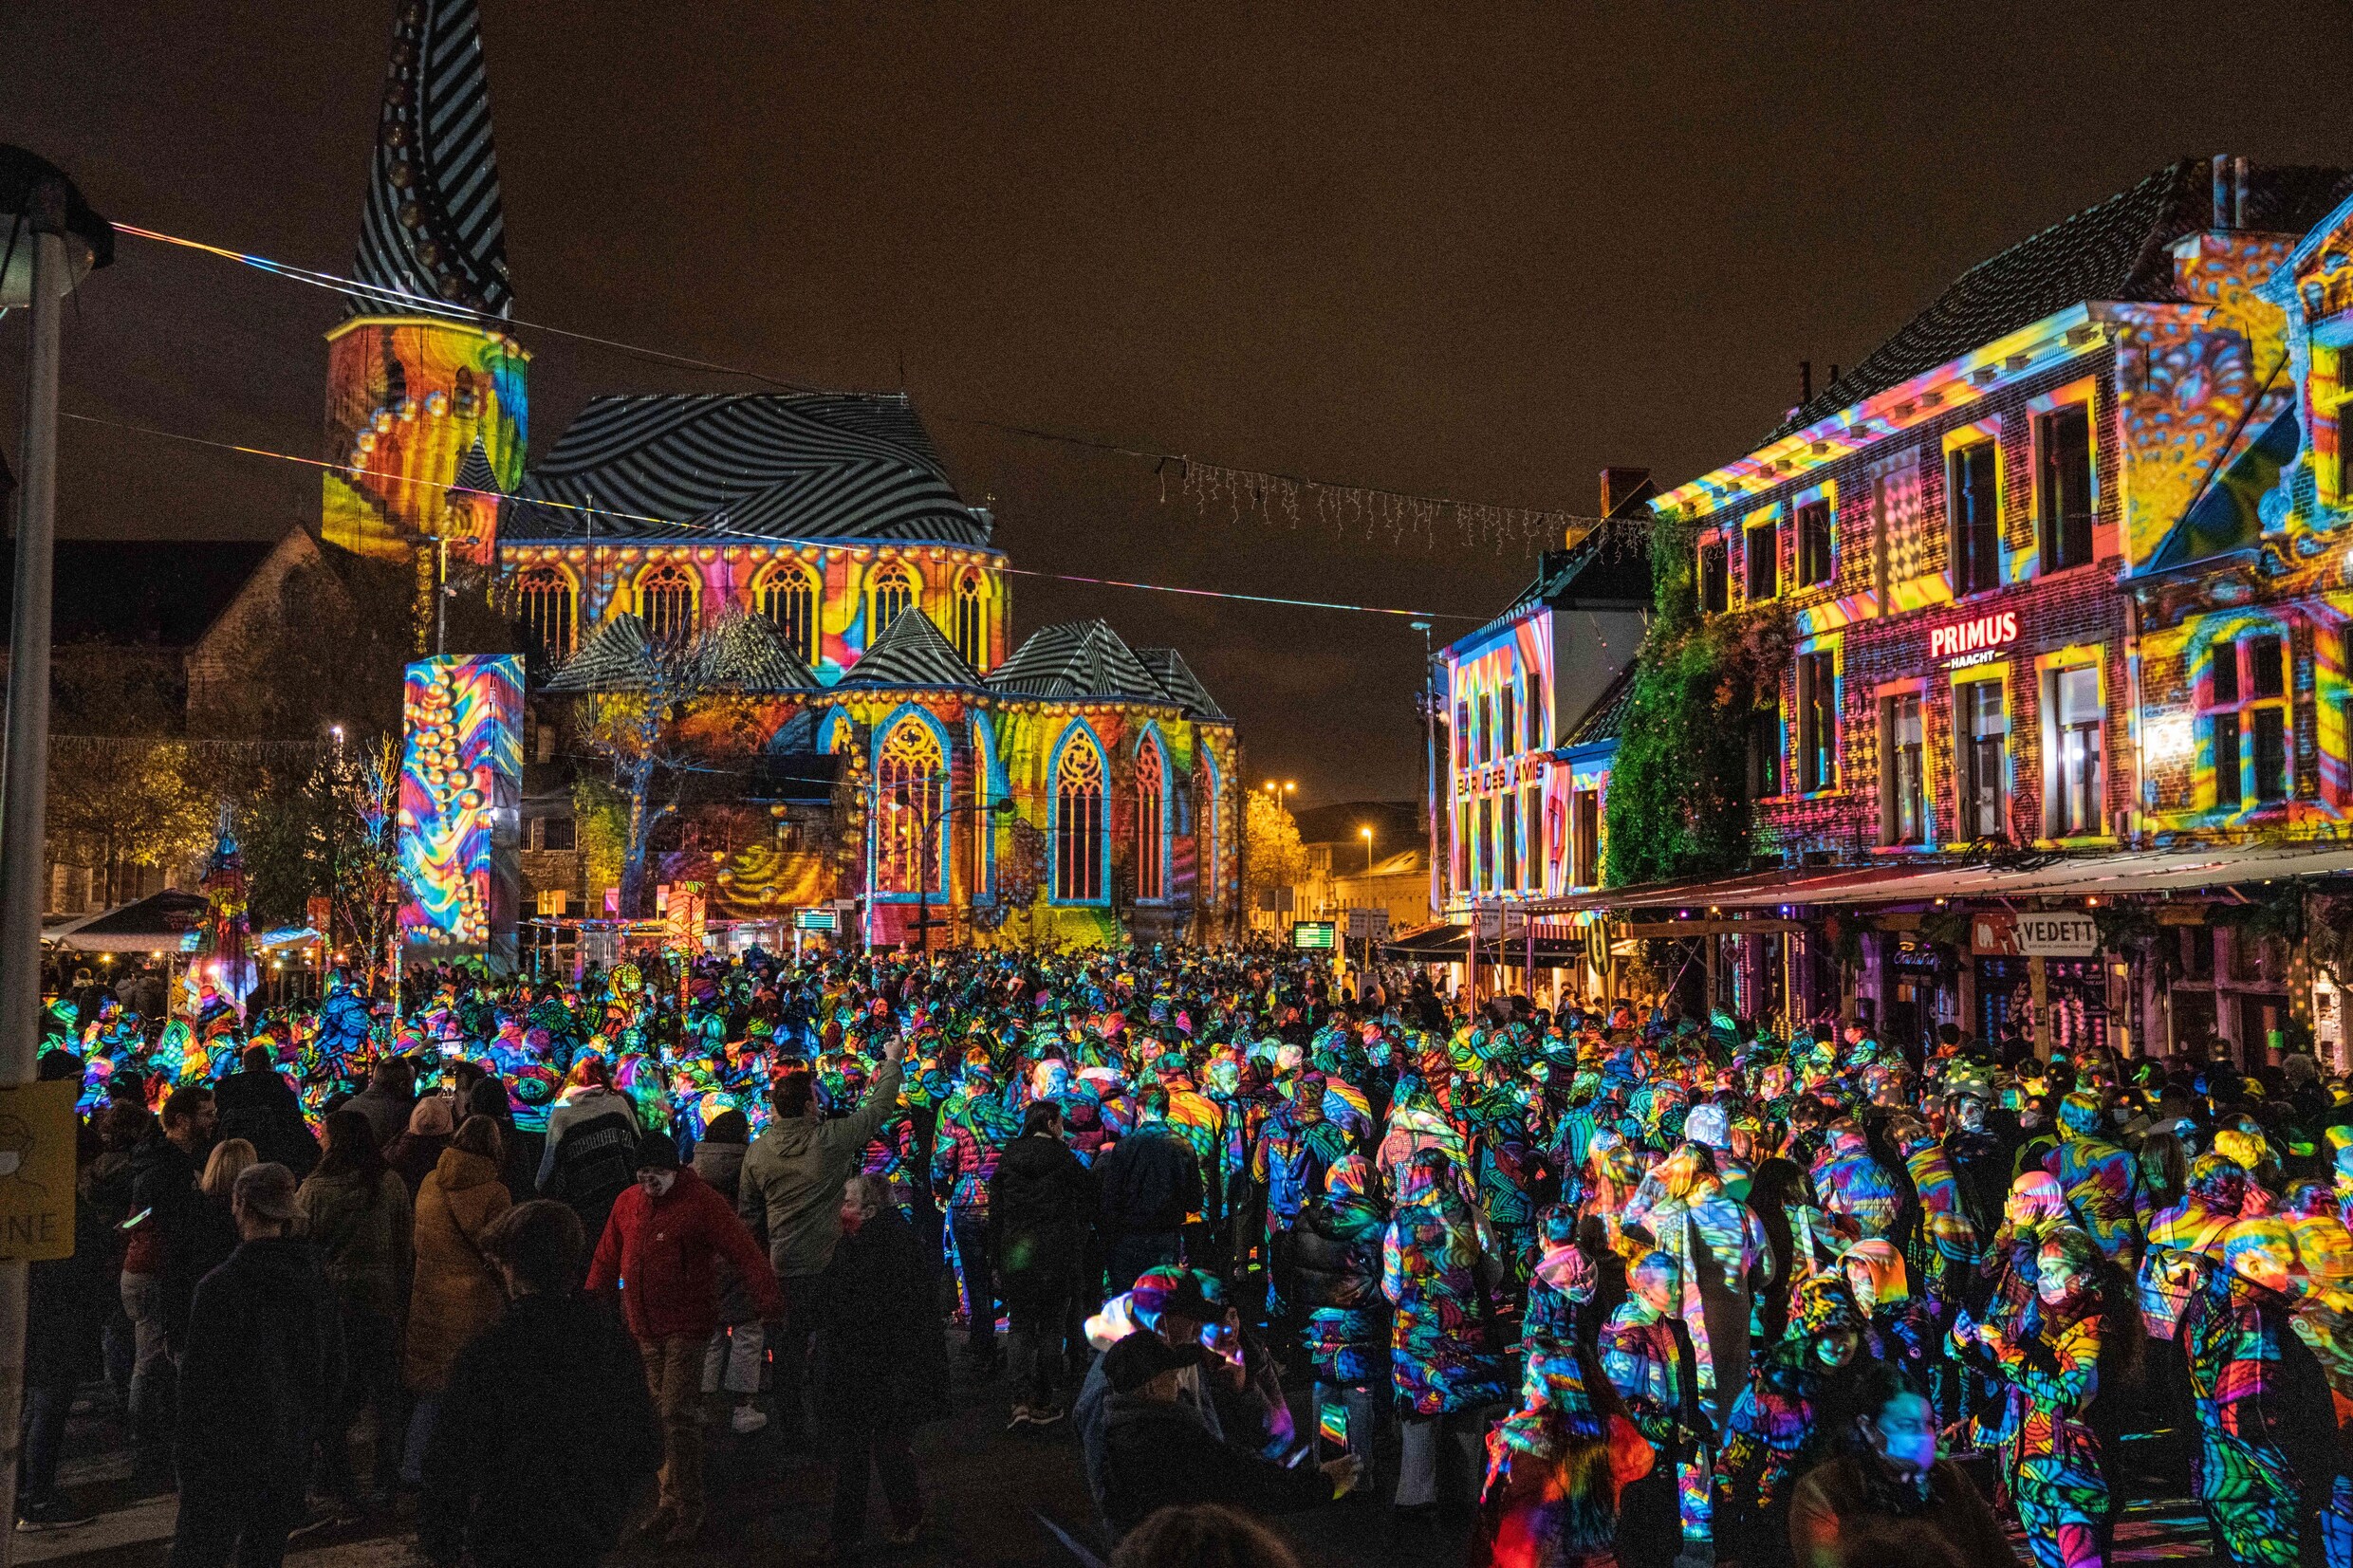 Overrompeling op tweede avond Lichtfestival: koppen lopen in Gent, politie moet oproepen stad te mijden